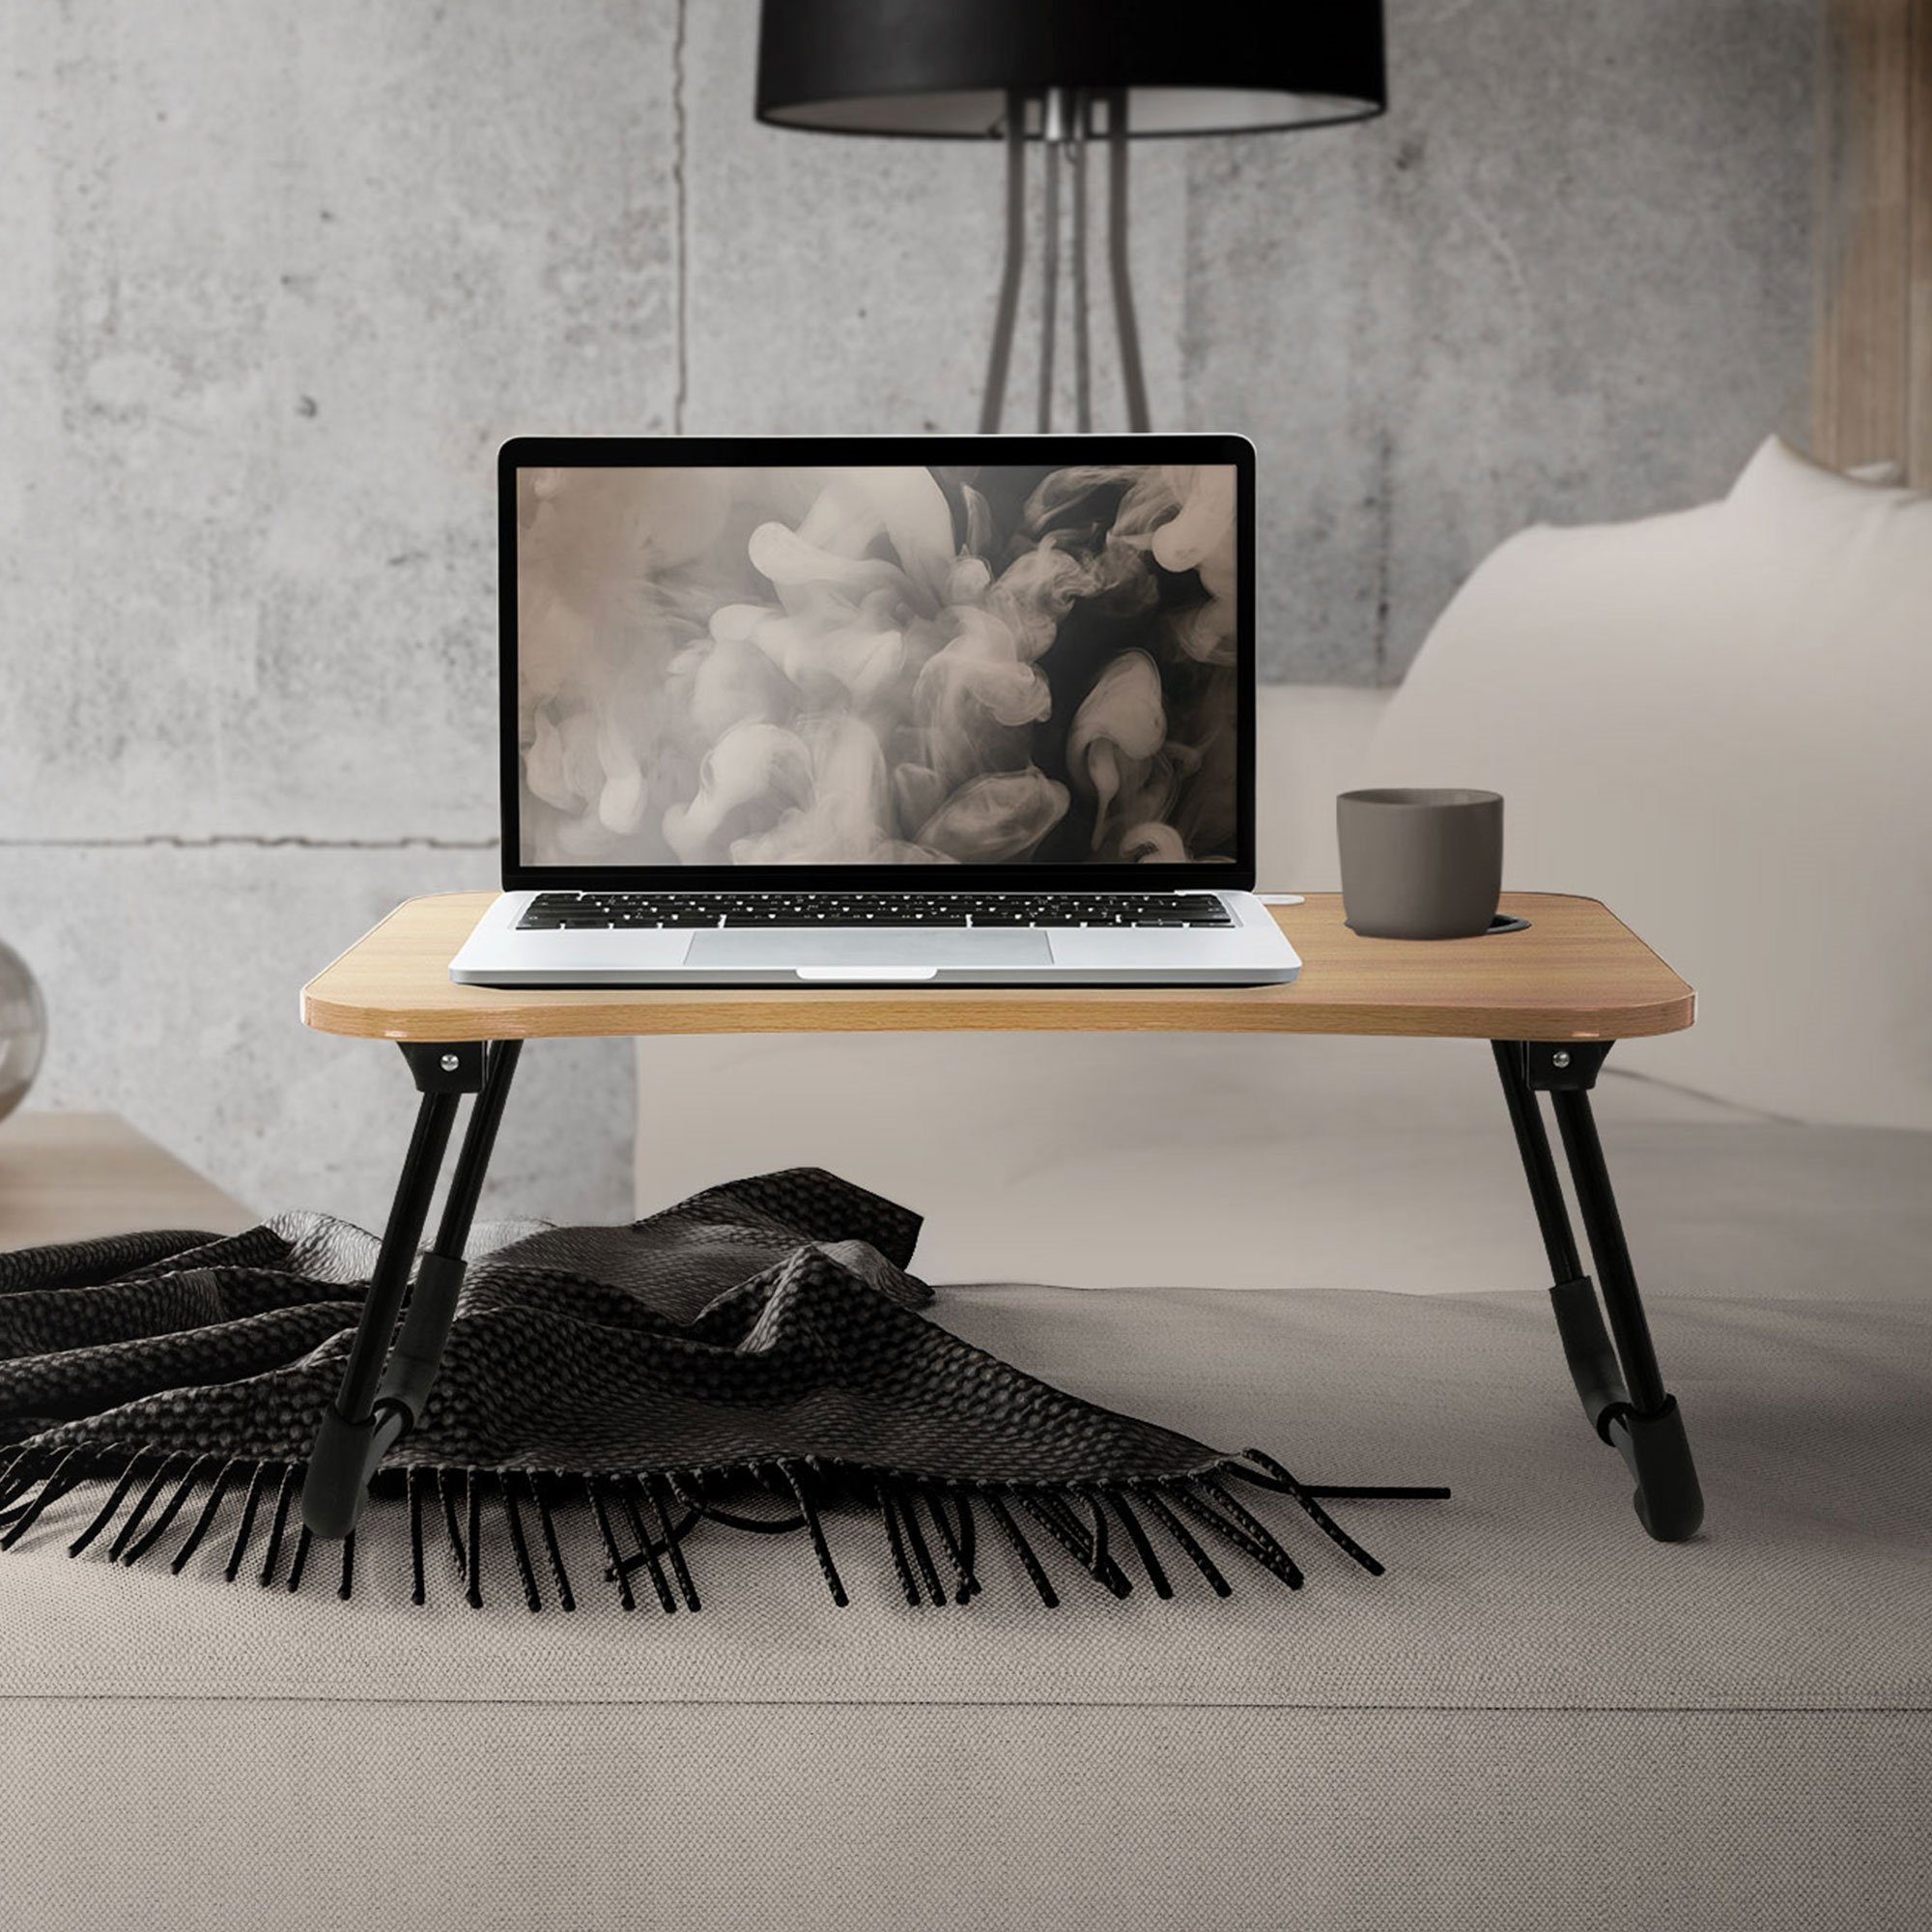 ML-DESIGN Laptoptisch Laptopständer Notebooktisch Betttisch Knietisch, Holzoptik 60x40cm mit 4 USB Ladeanschluss Schublade USB-Lampe Lüfter